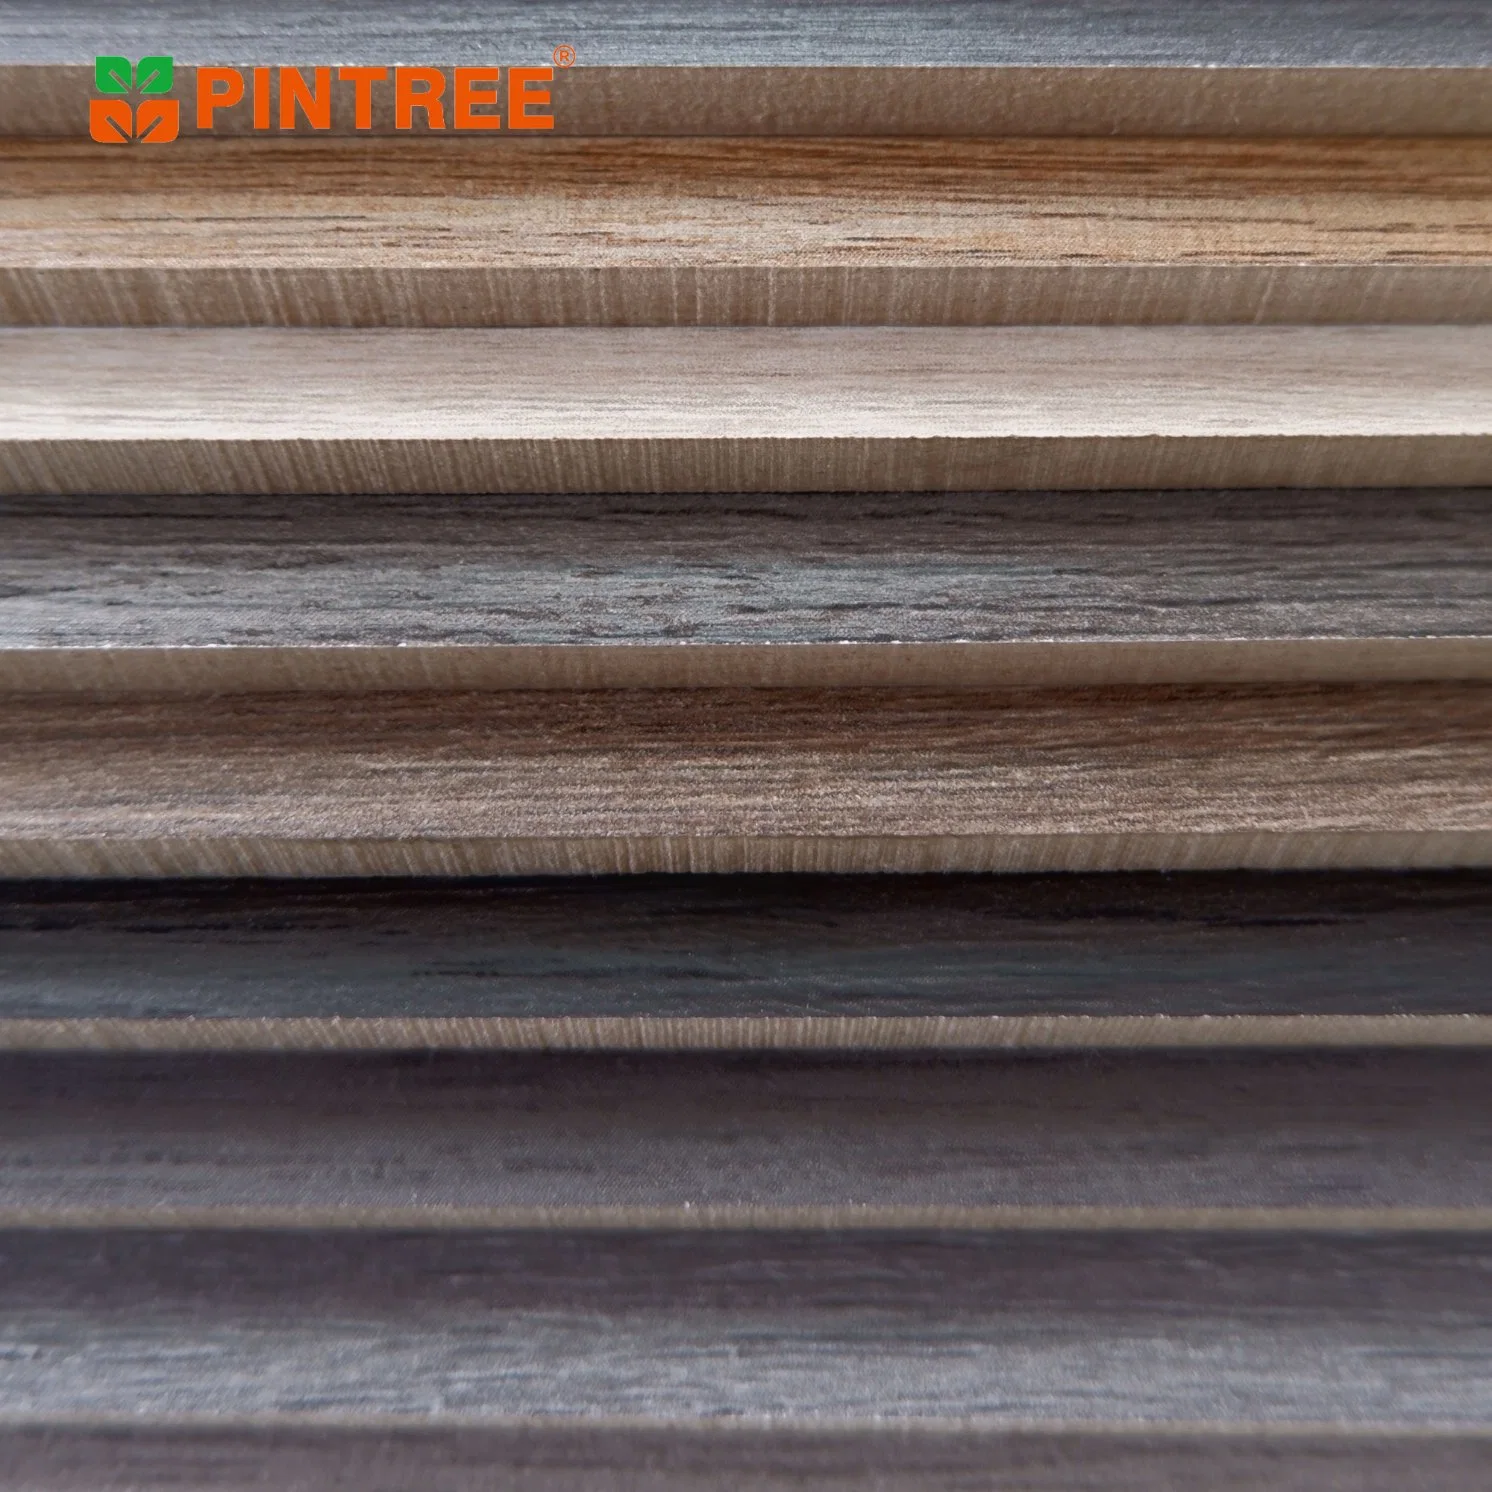 9-25mm Dicke laminiert Hartholz Melamin Sperrholz Blatt Holz Kiefer Oberfläche